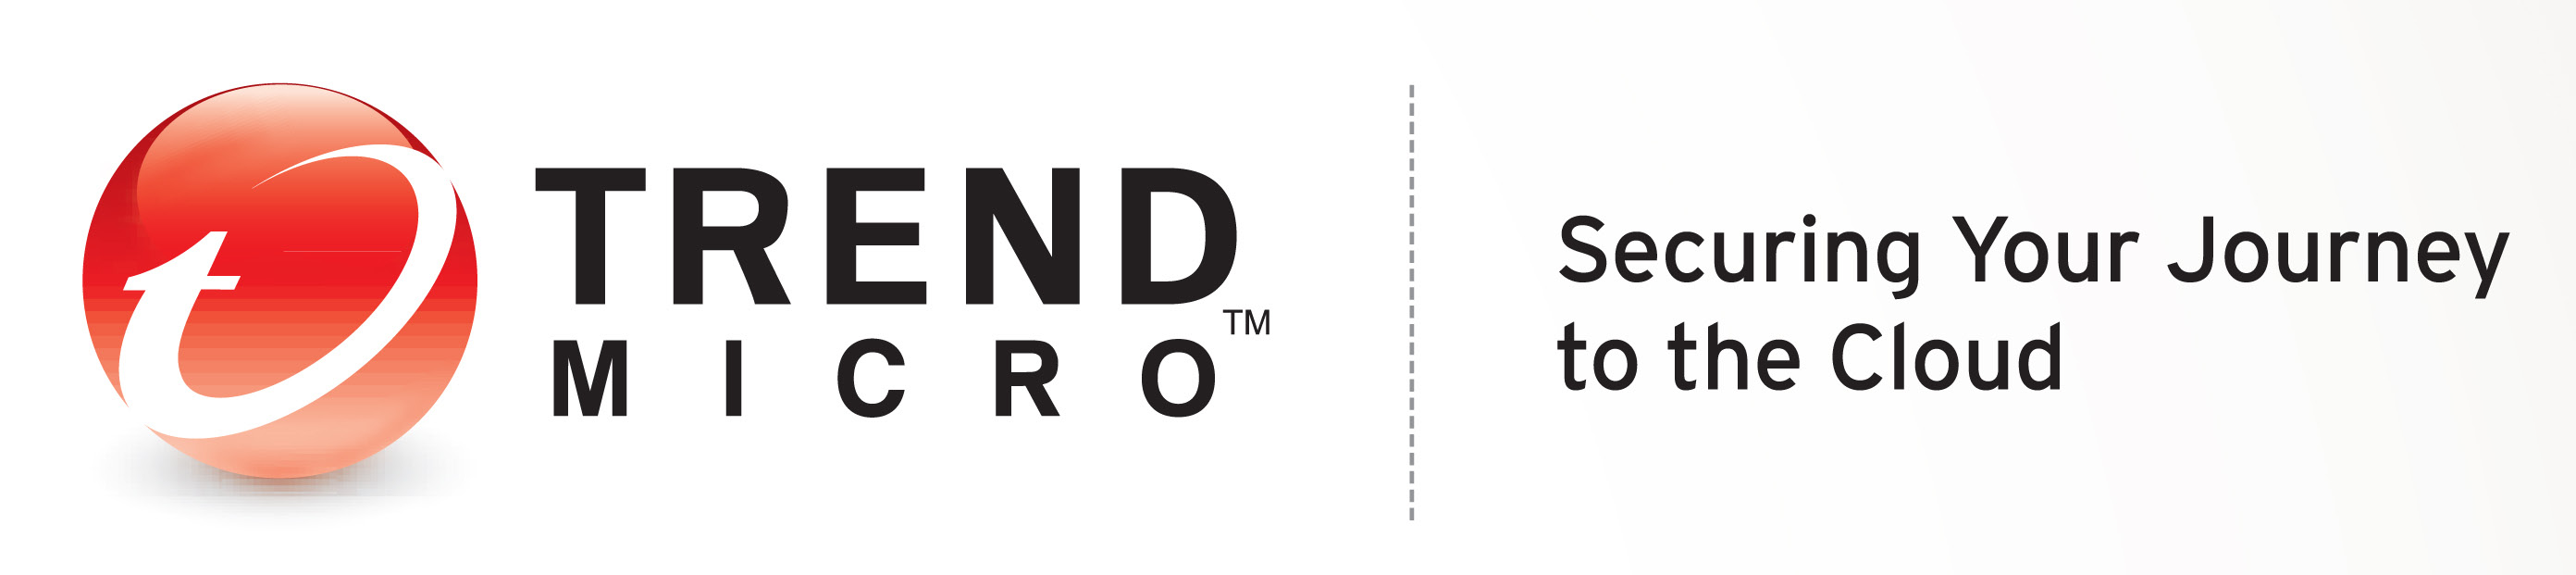 TREND MICRO Küresel bulut güvenliği liderlerinden biri olan Trend Micro Incorporated (TYO: 4704;TSE: 4704), şirketler ve tüketicilere yönelik Internet içeriği güvenliği ve tehdit yönetimi çözümleri